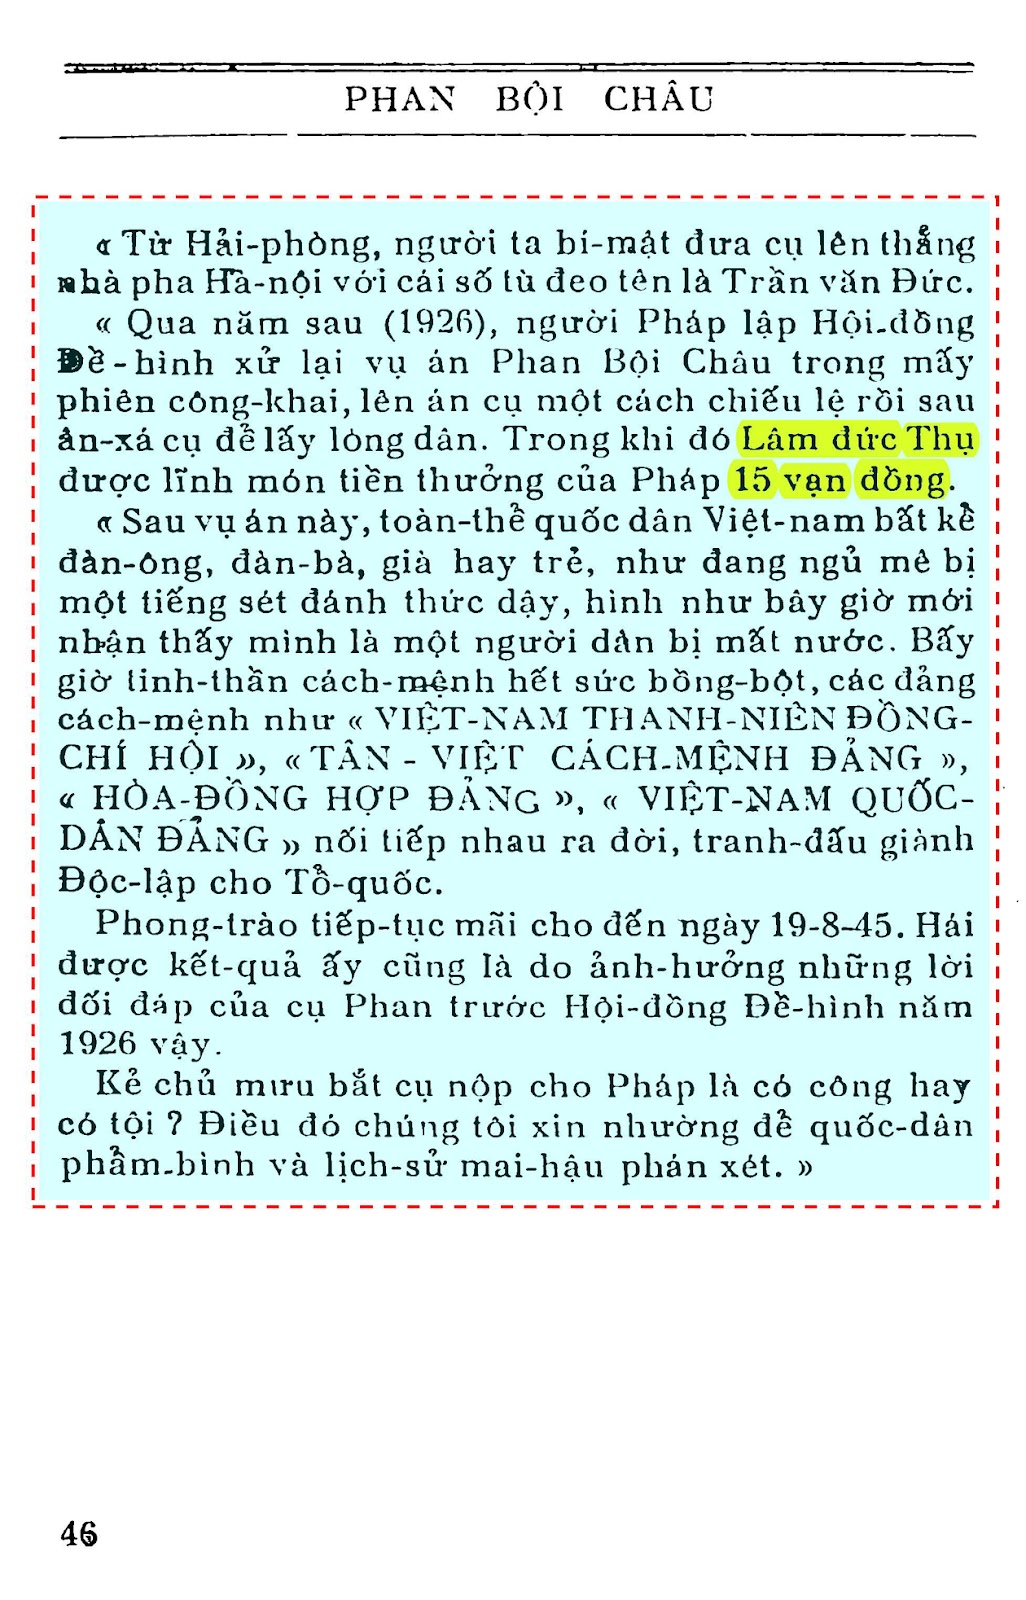 Trang 46 Phan Bội Chau - Thế Nguyên.jpg